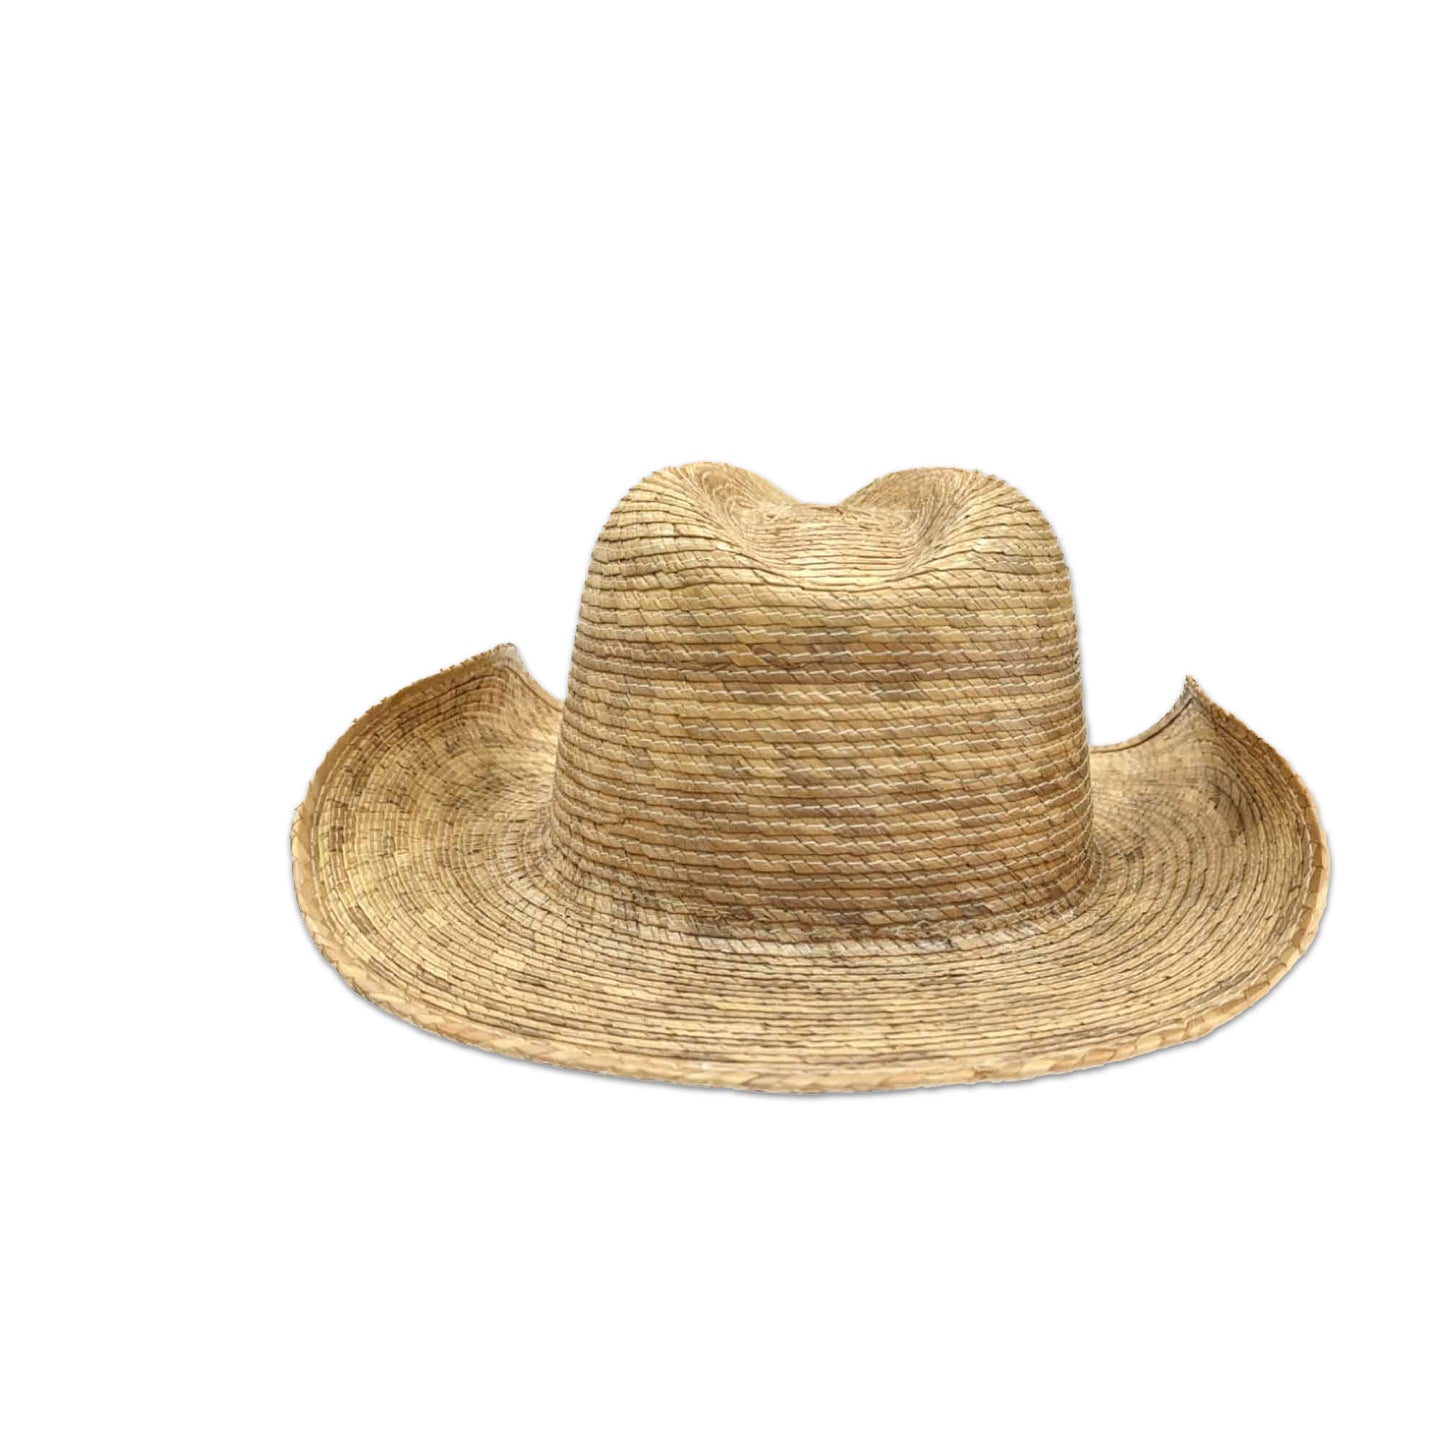 Straw Cowboy hat